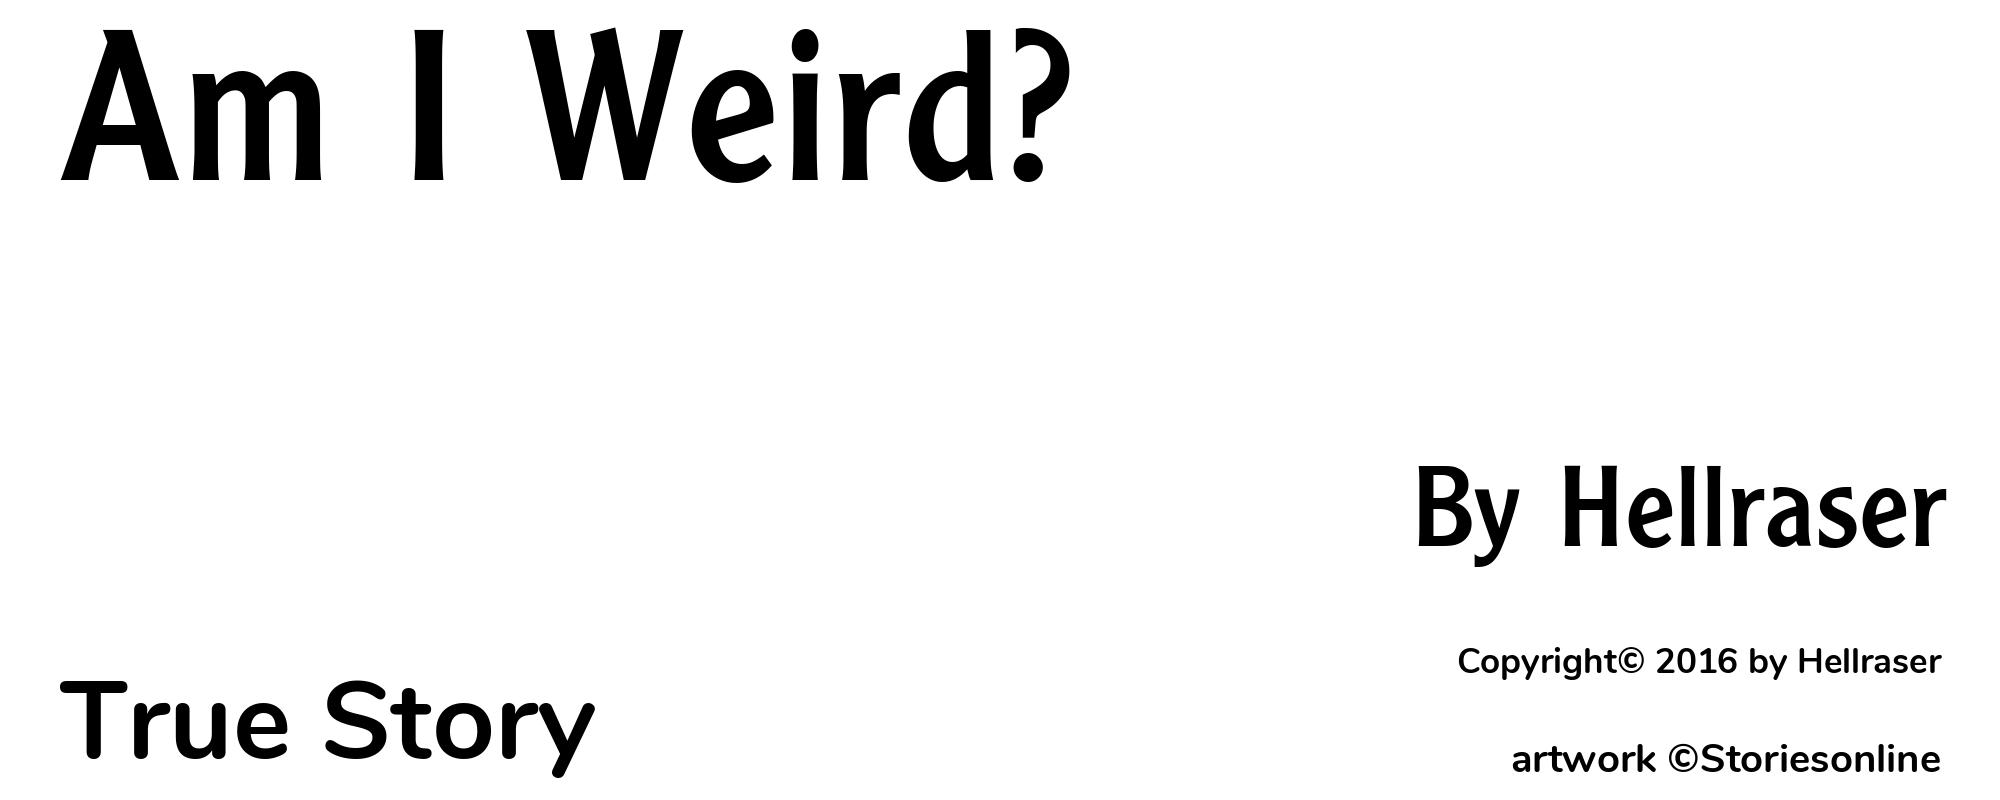 Am I Weird? - Cover